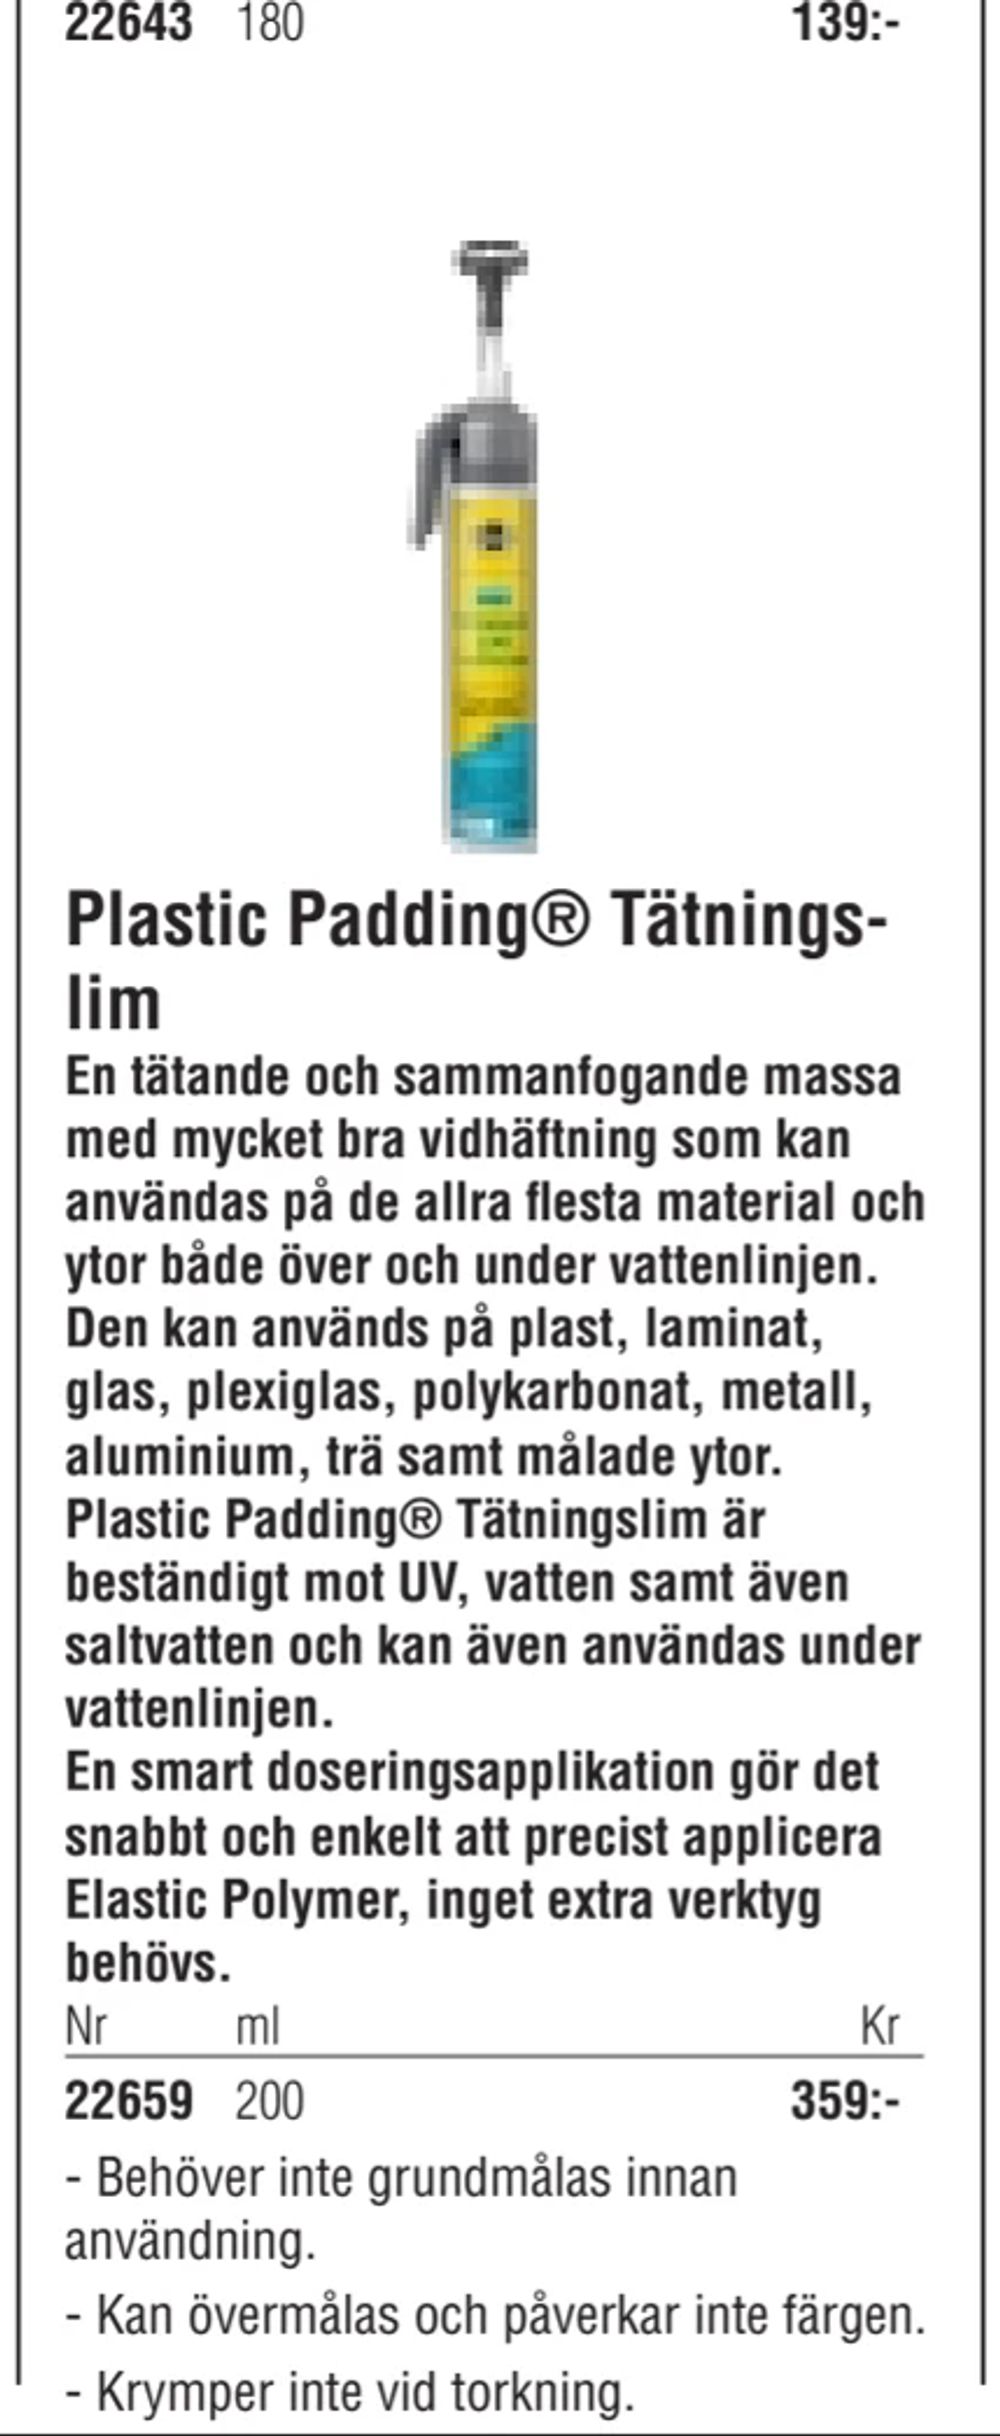 Erbjudanden på Plastic Padding® Tätningslim från Erlandsons Brygga för 359 kr